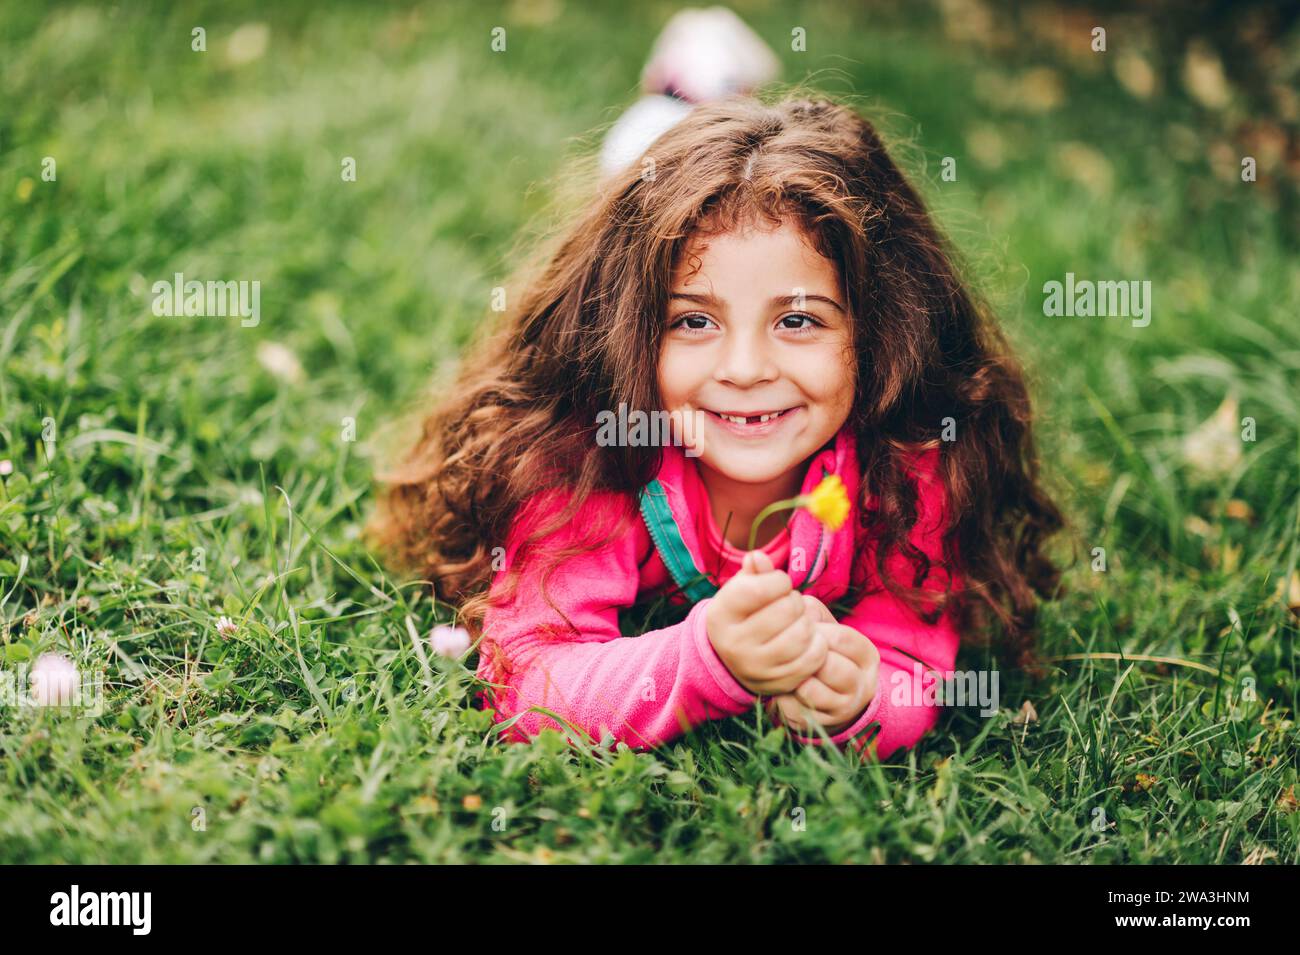 Outdoor-Porträt eines entzückenden kleinen 3-4-jährigen Mädchens mit schönen langen Haaren, in rosa Fleecejacke, auf grünem Gras liegend, mit gelbem Floß Stockfoto